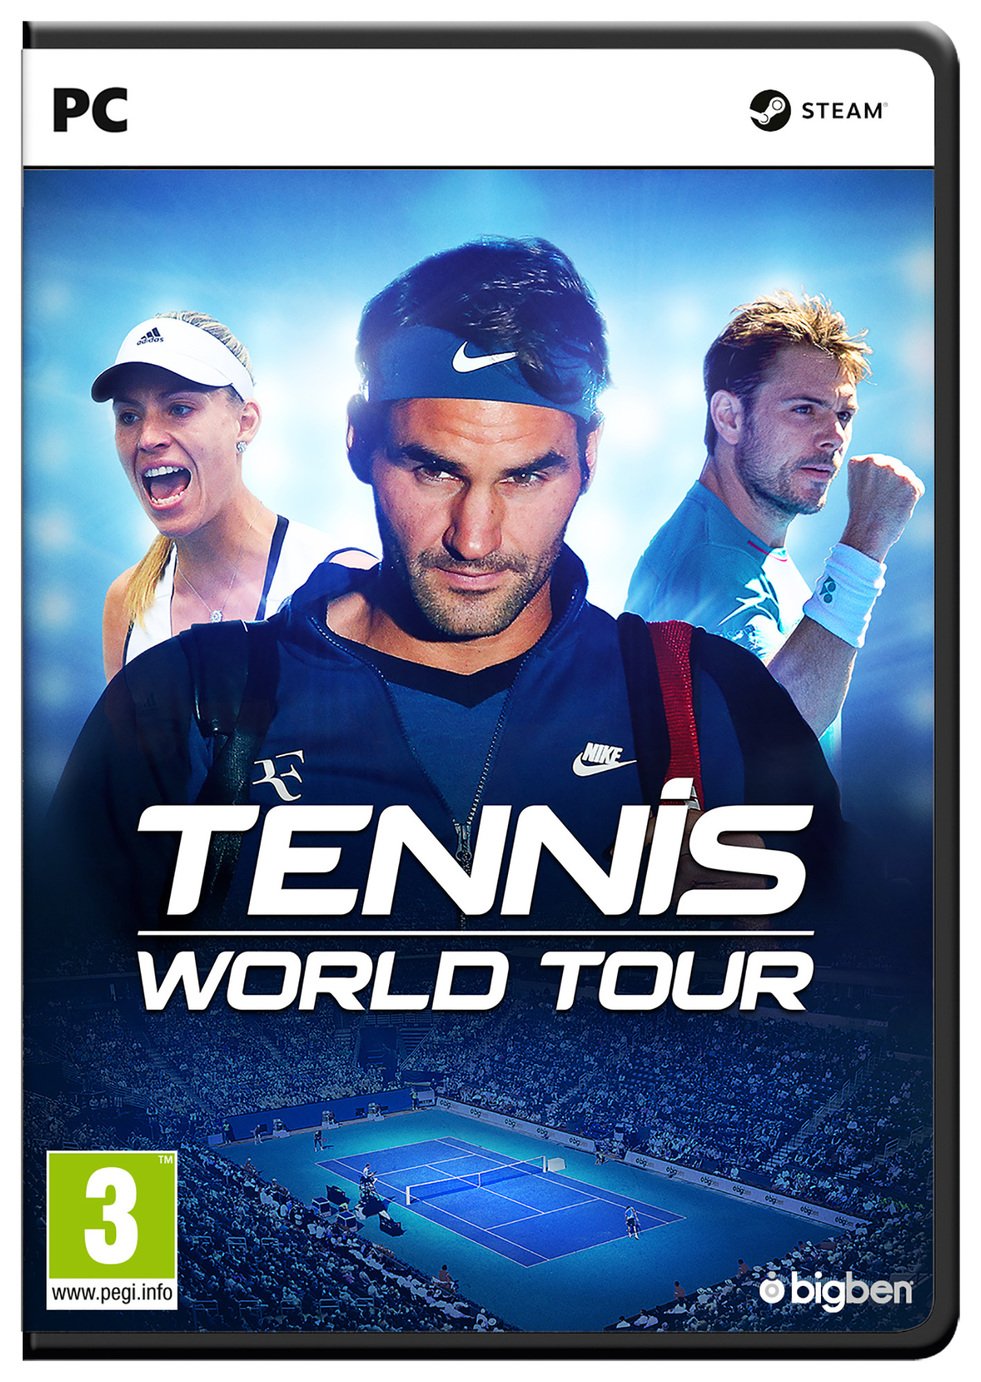 Tennis World Tour PC Game